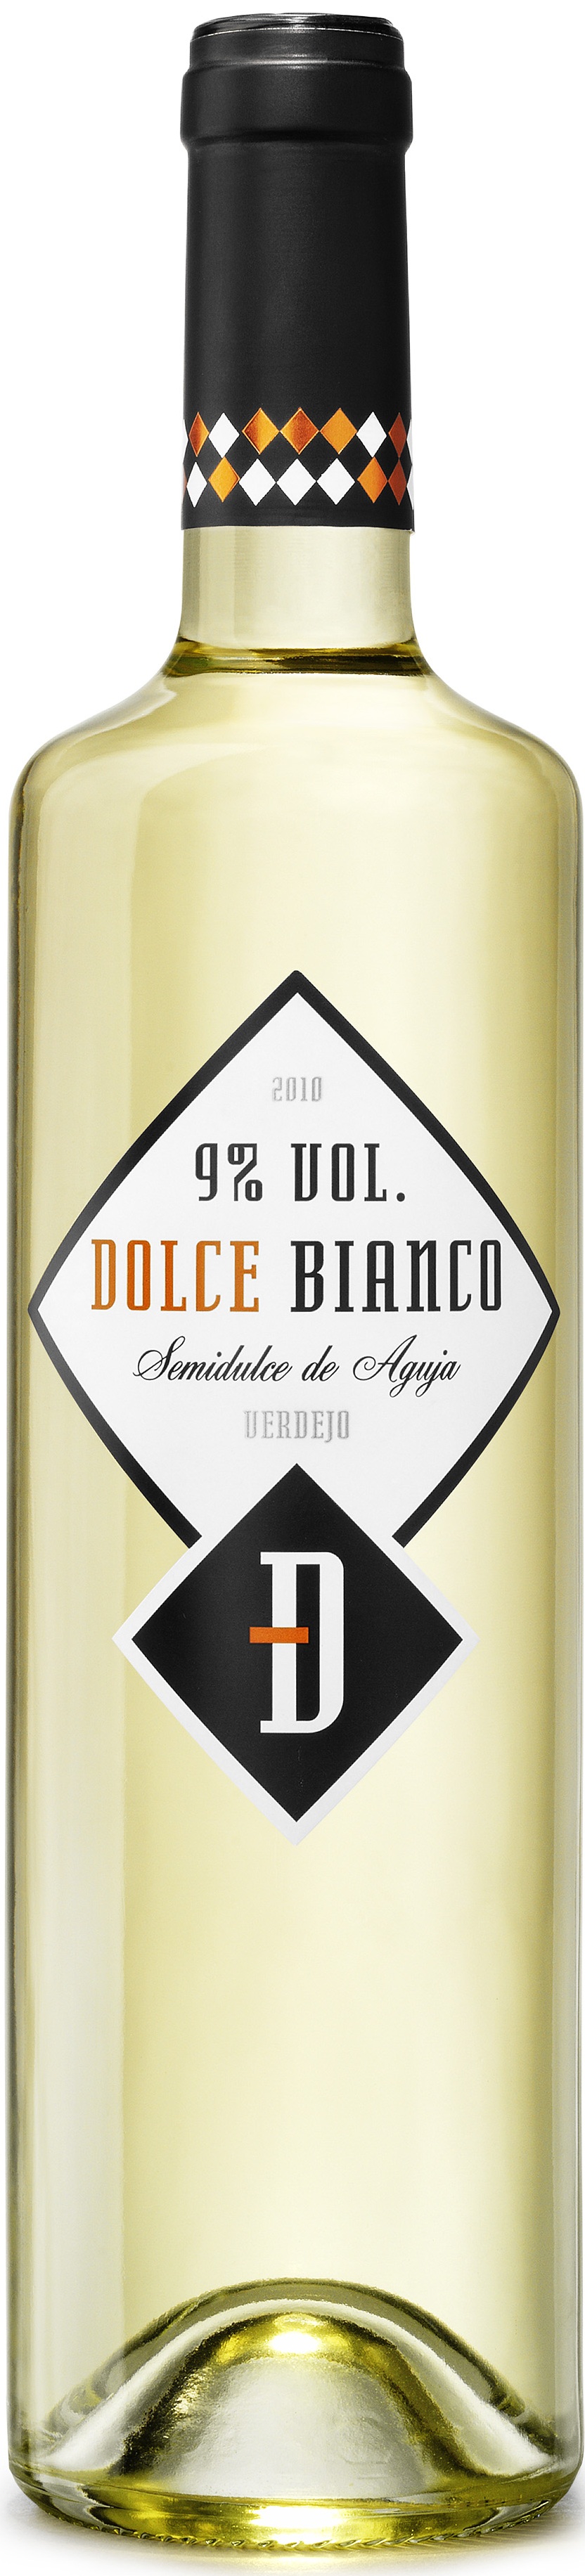 Image of Wine bottle Dolce Bianco